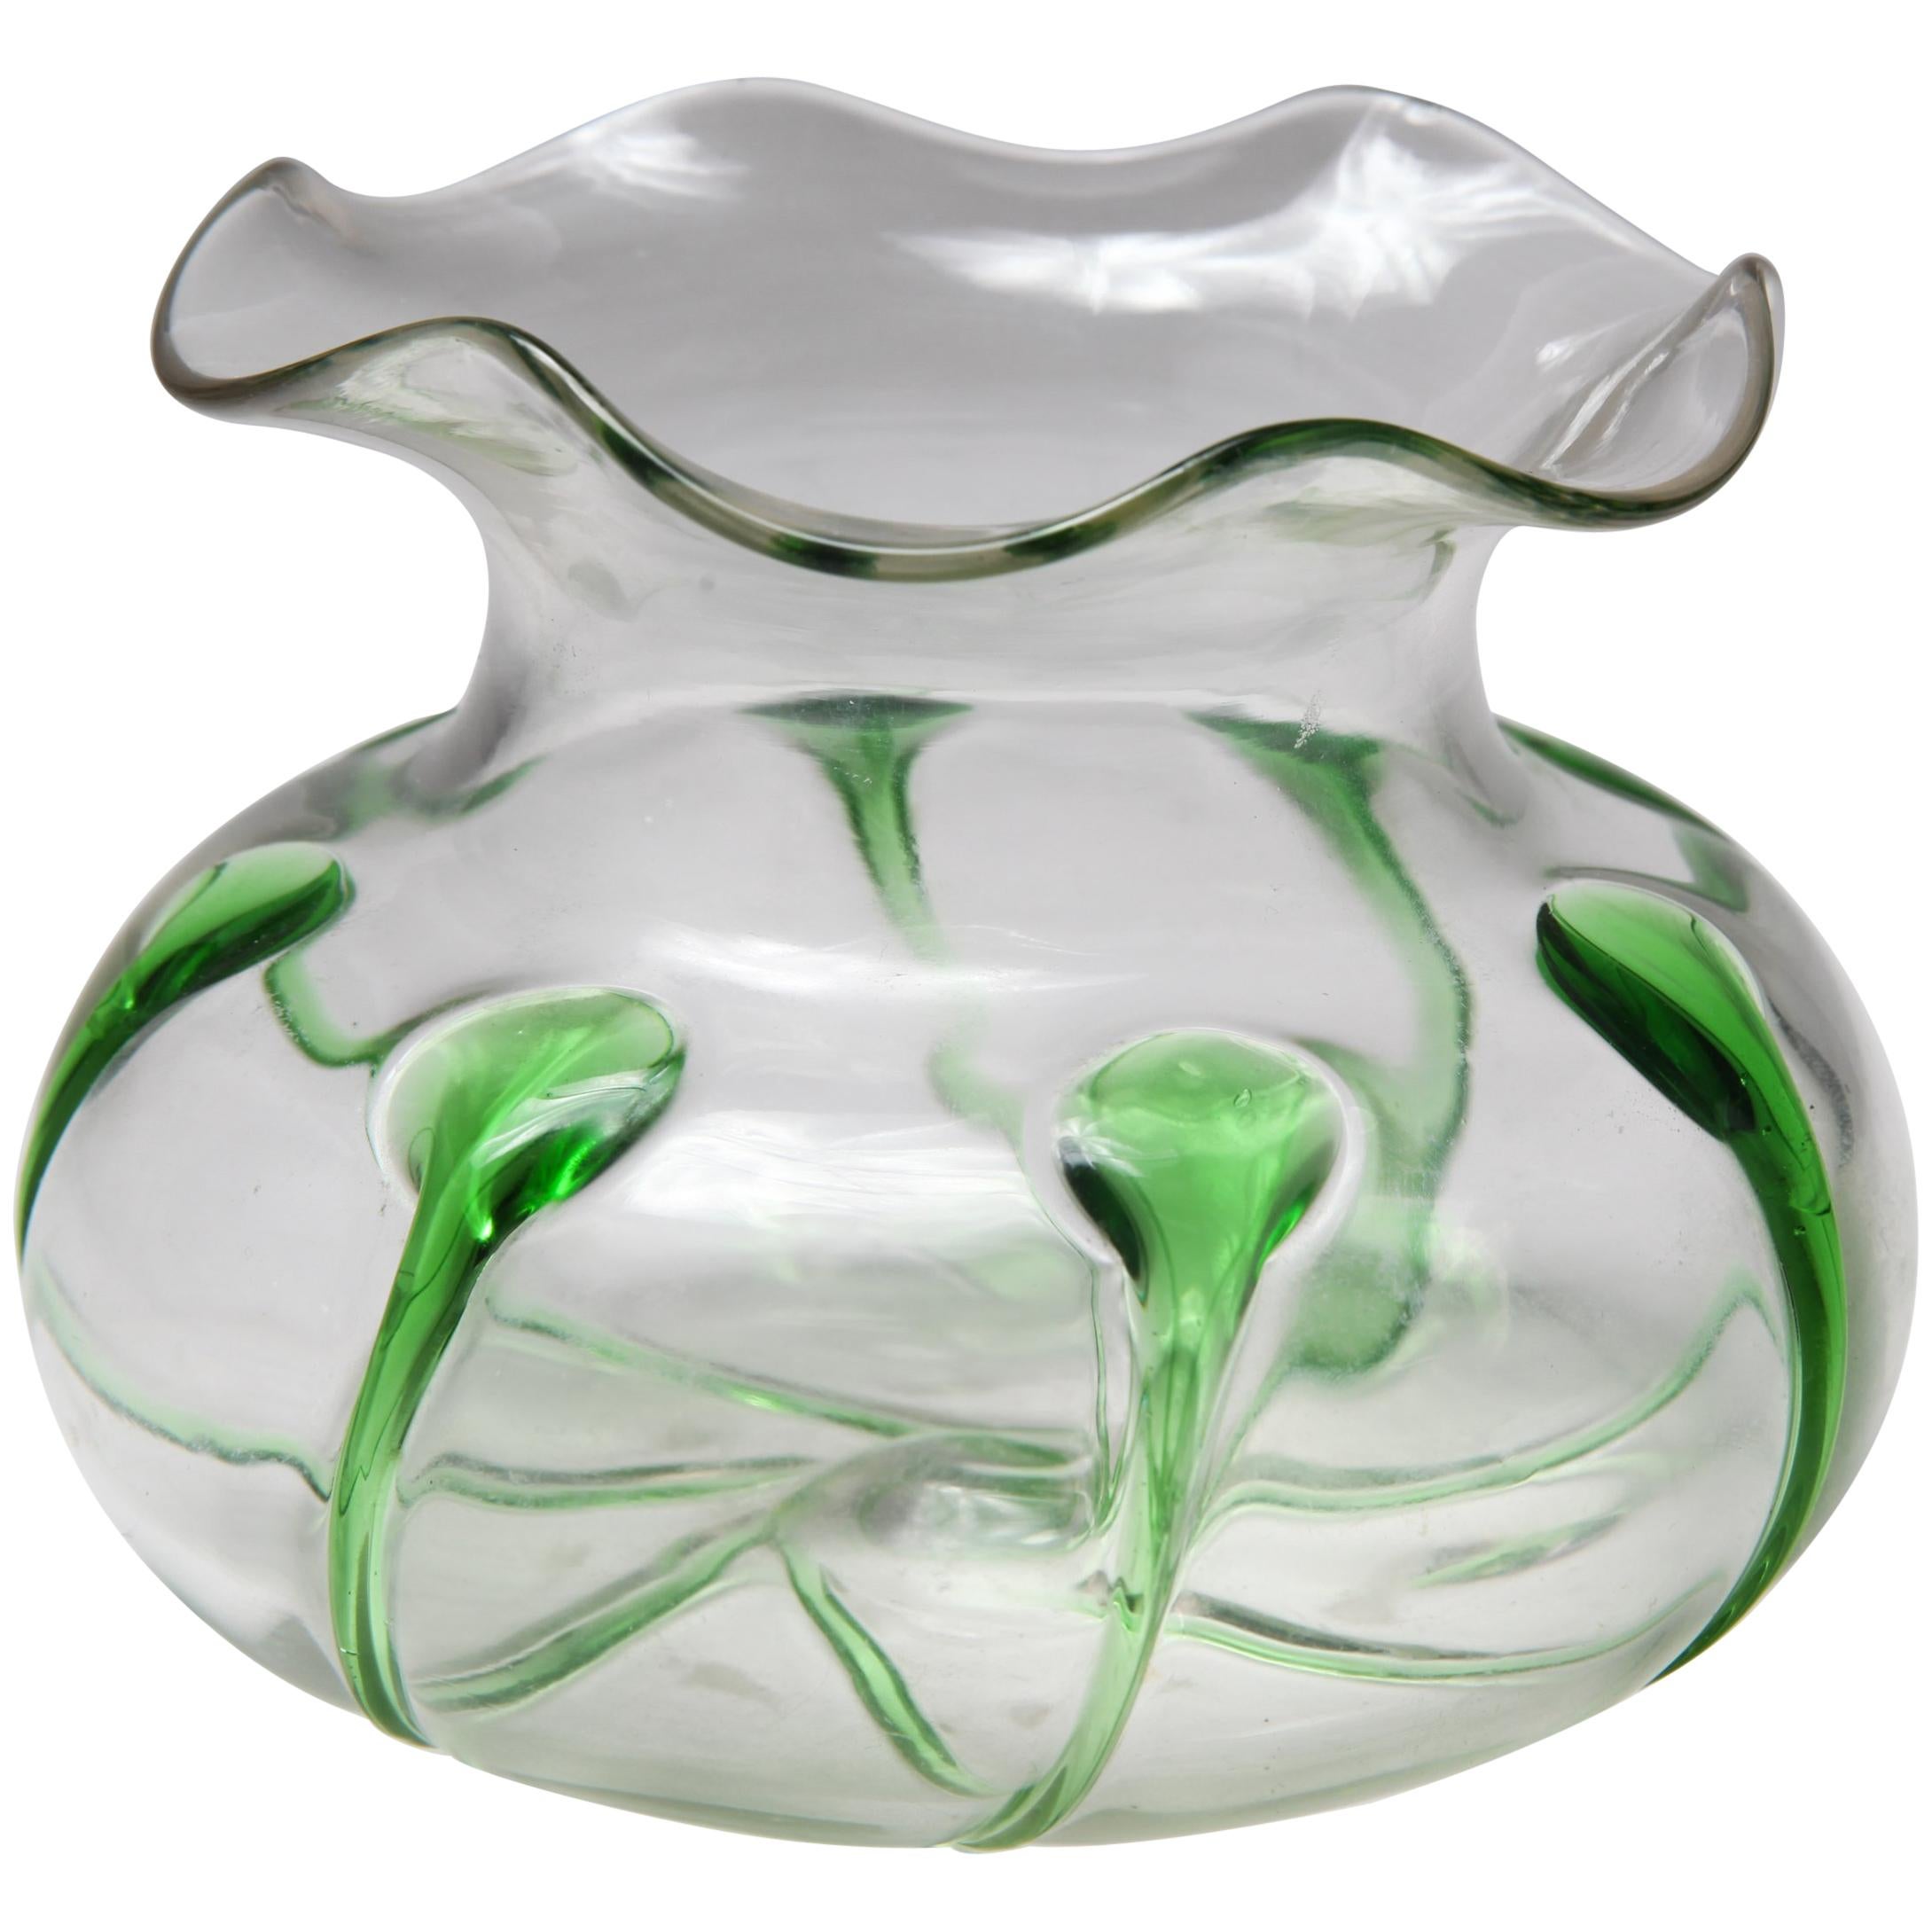 Bol en verre de style Art Nouveau avec accents verts